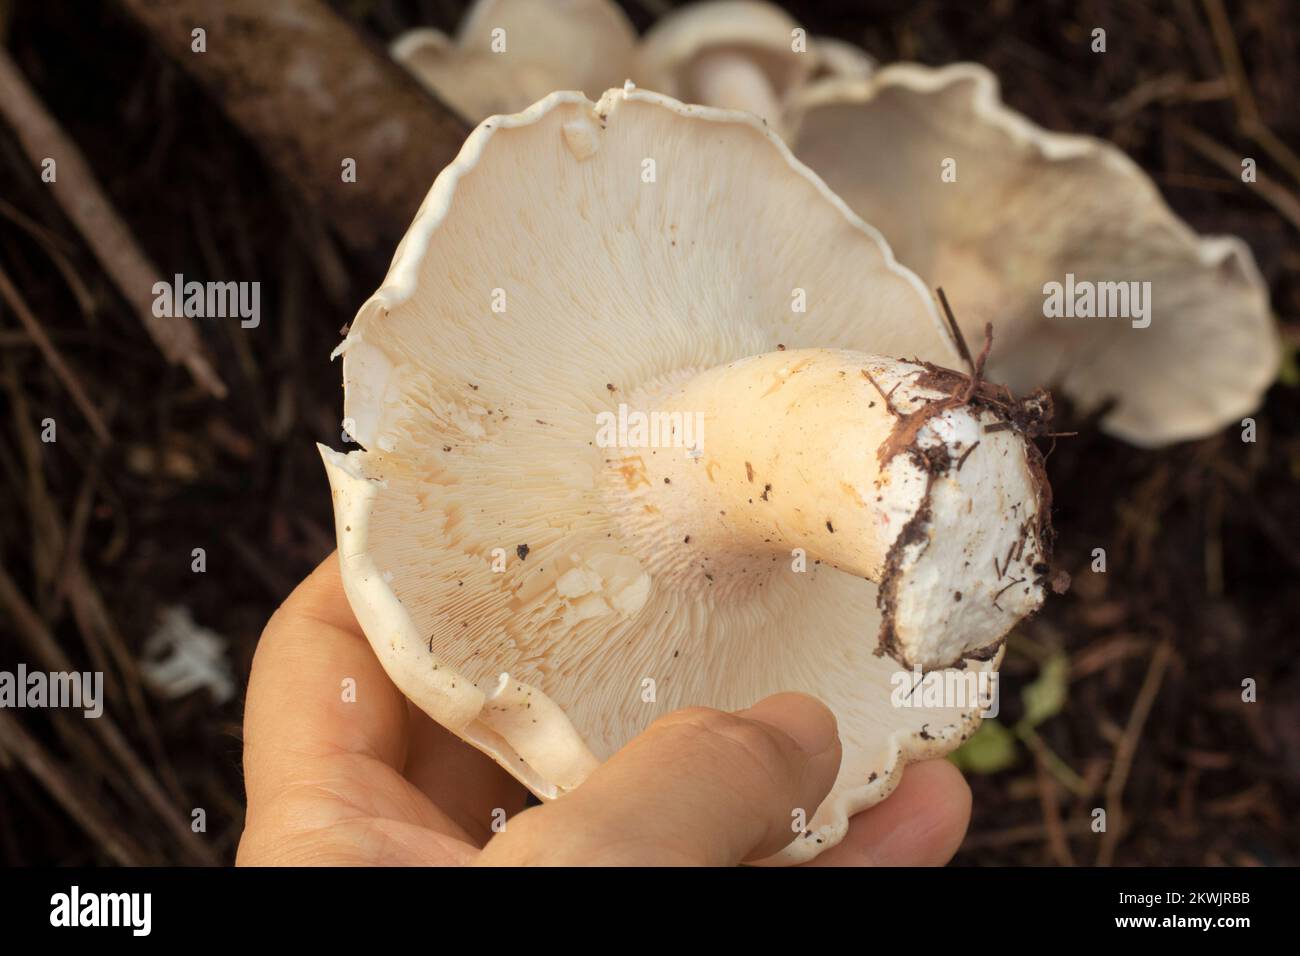 immagine a infrarossi dei grandi funghi bianchi selvatici di leucofax sul terreno Foto Stock